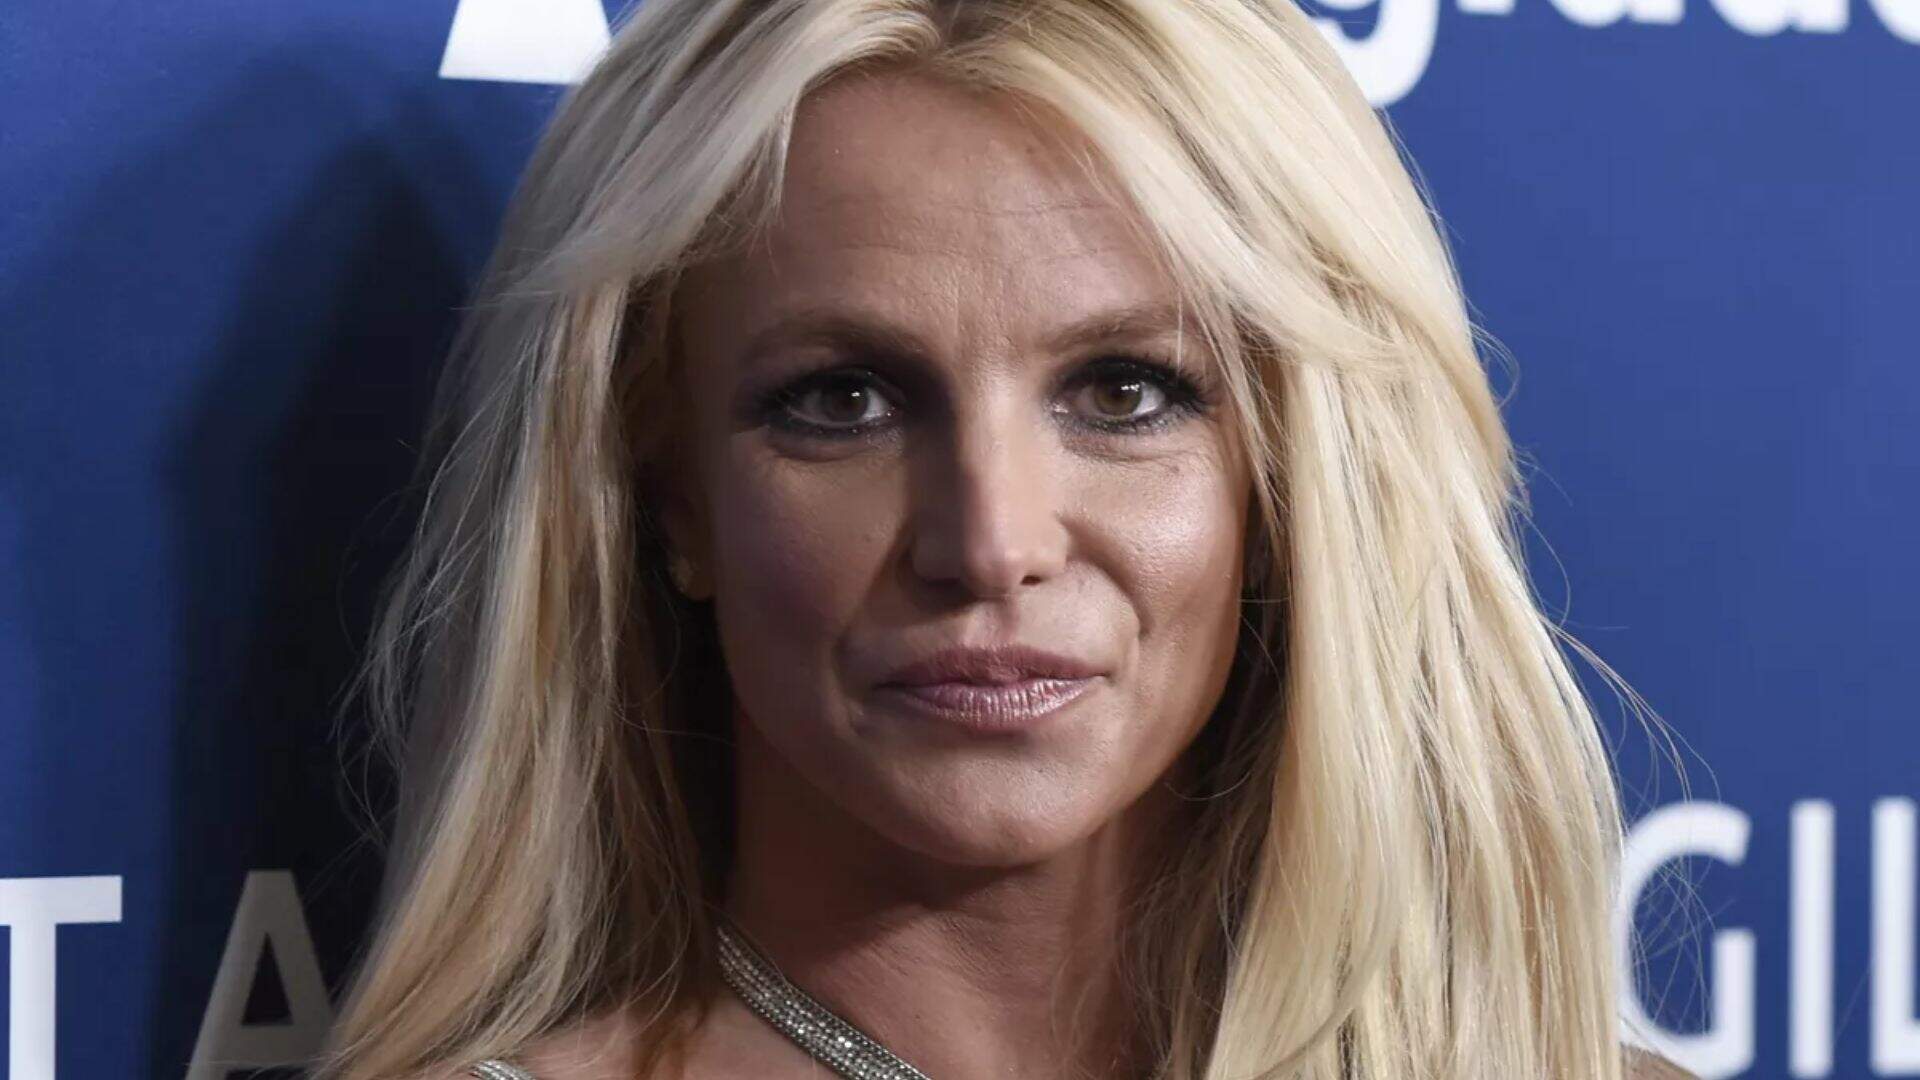 Britney Spears relembra piores momentos com o pai e faz revelação inédita: “Queime no inferno”